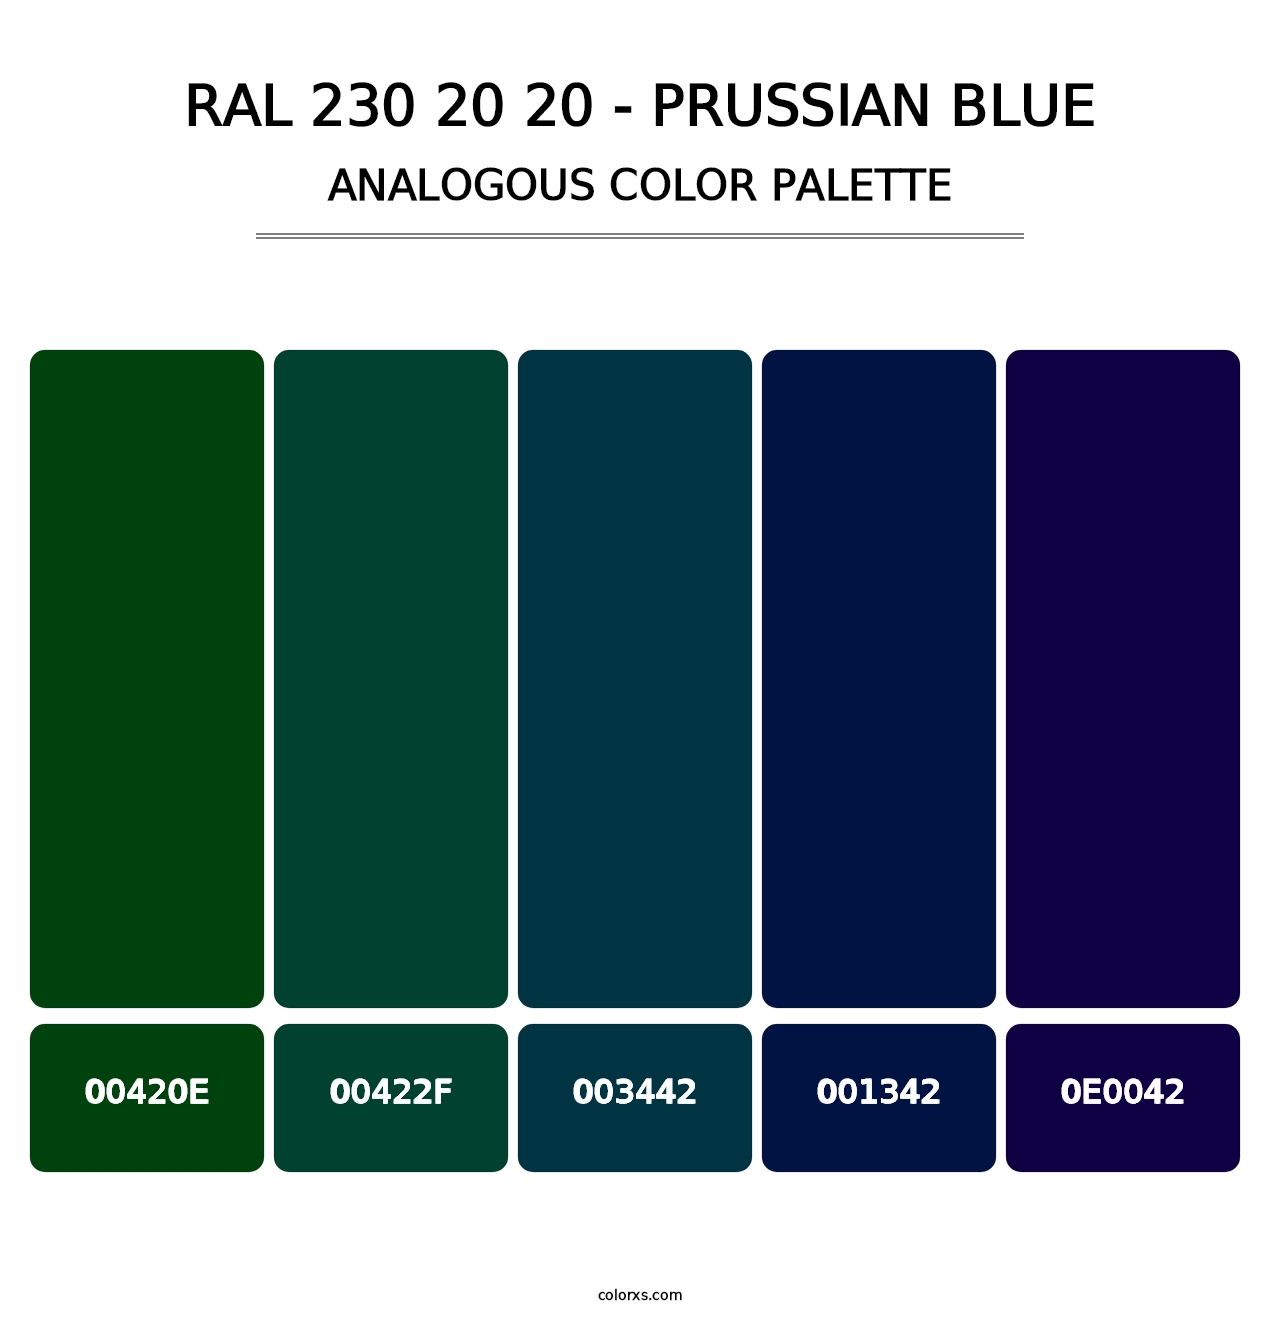 RAL 230 20 20 - Prussian Blue - Analogous Color Palette